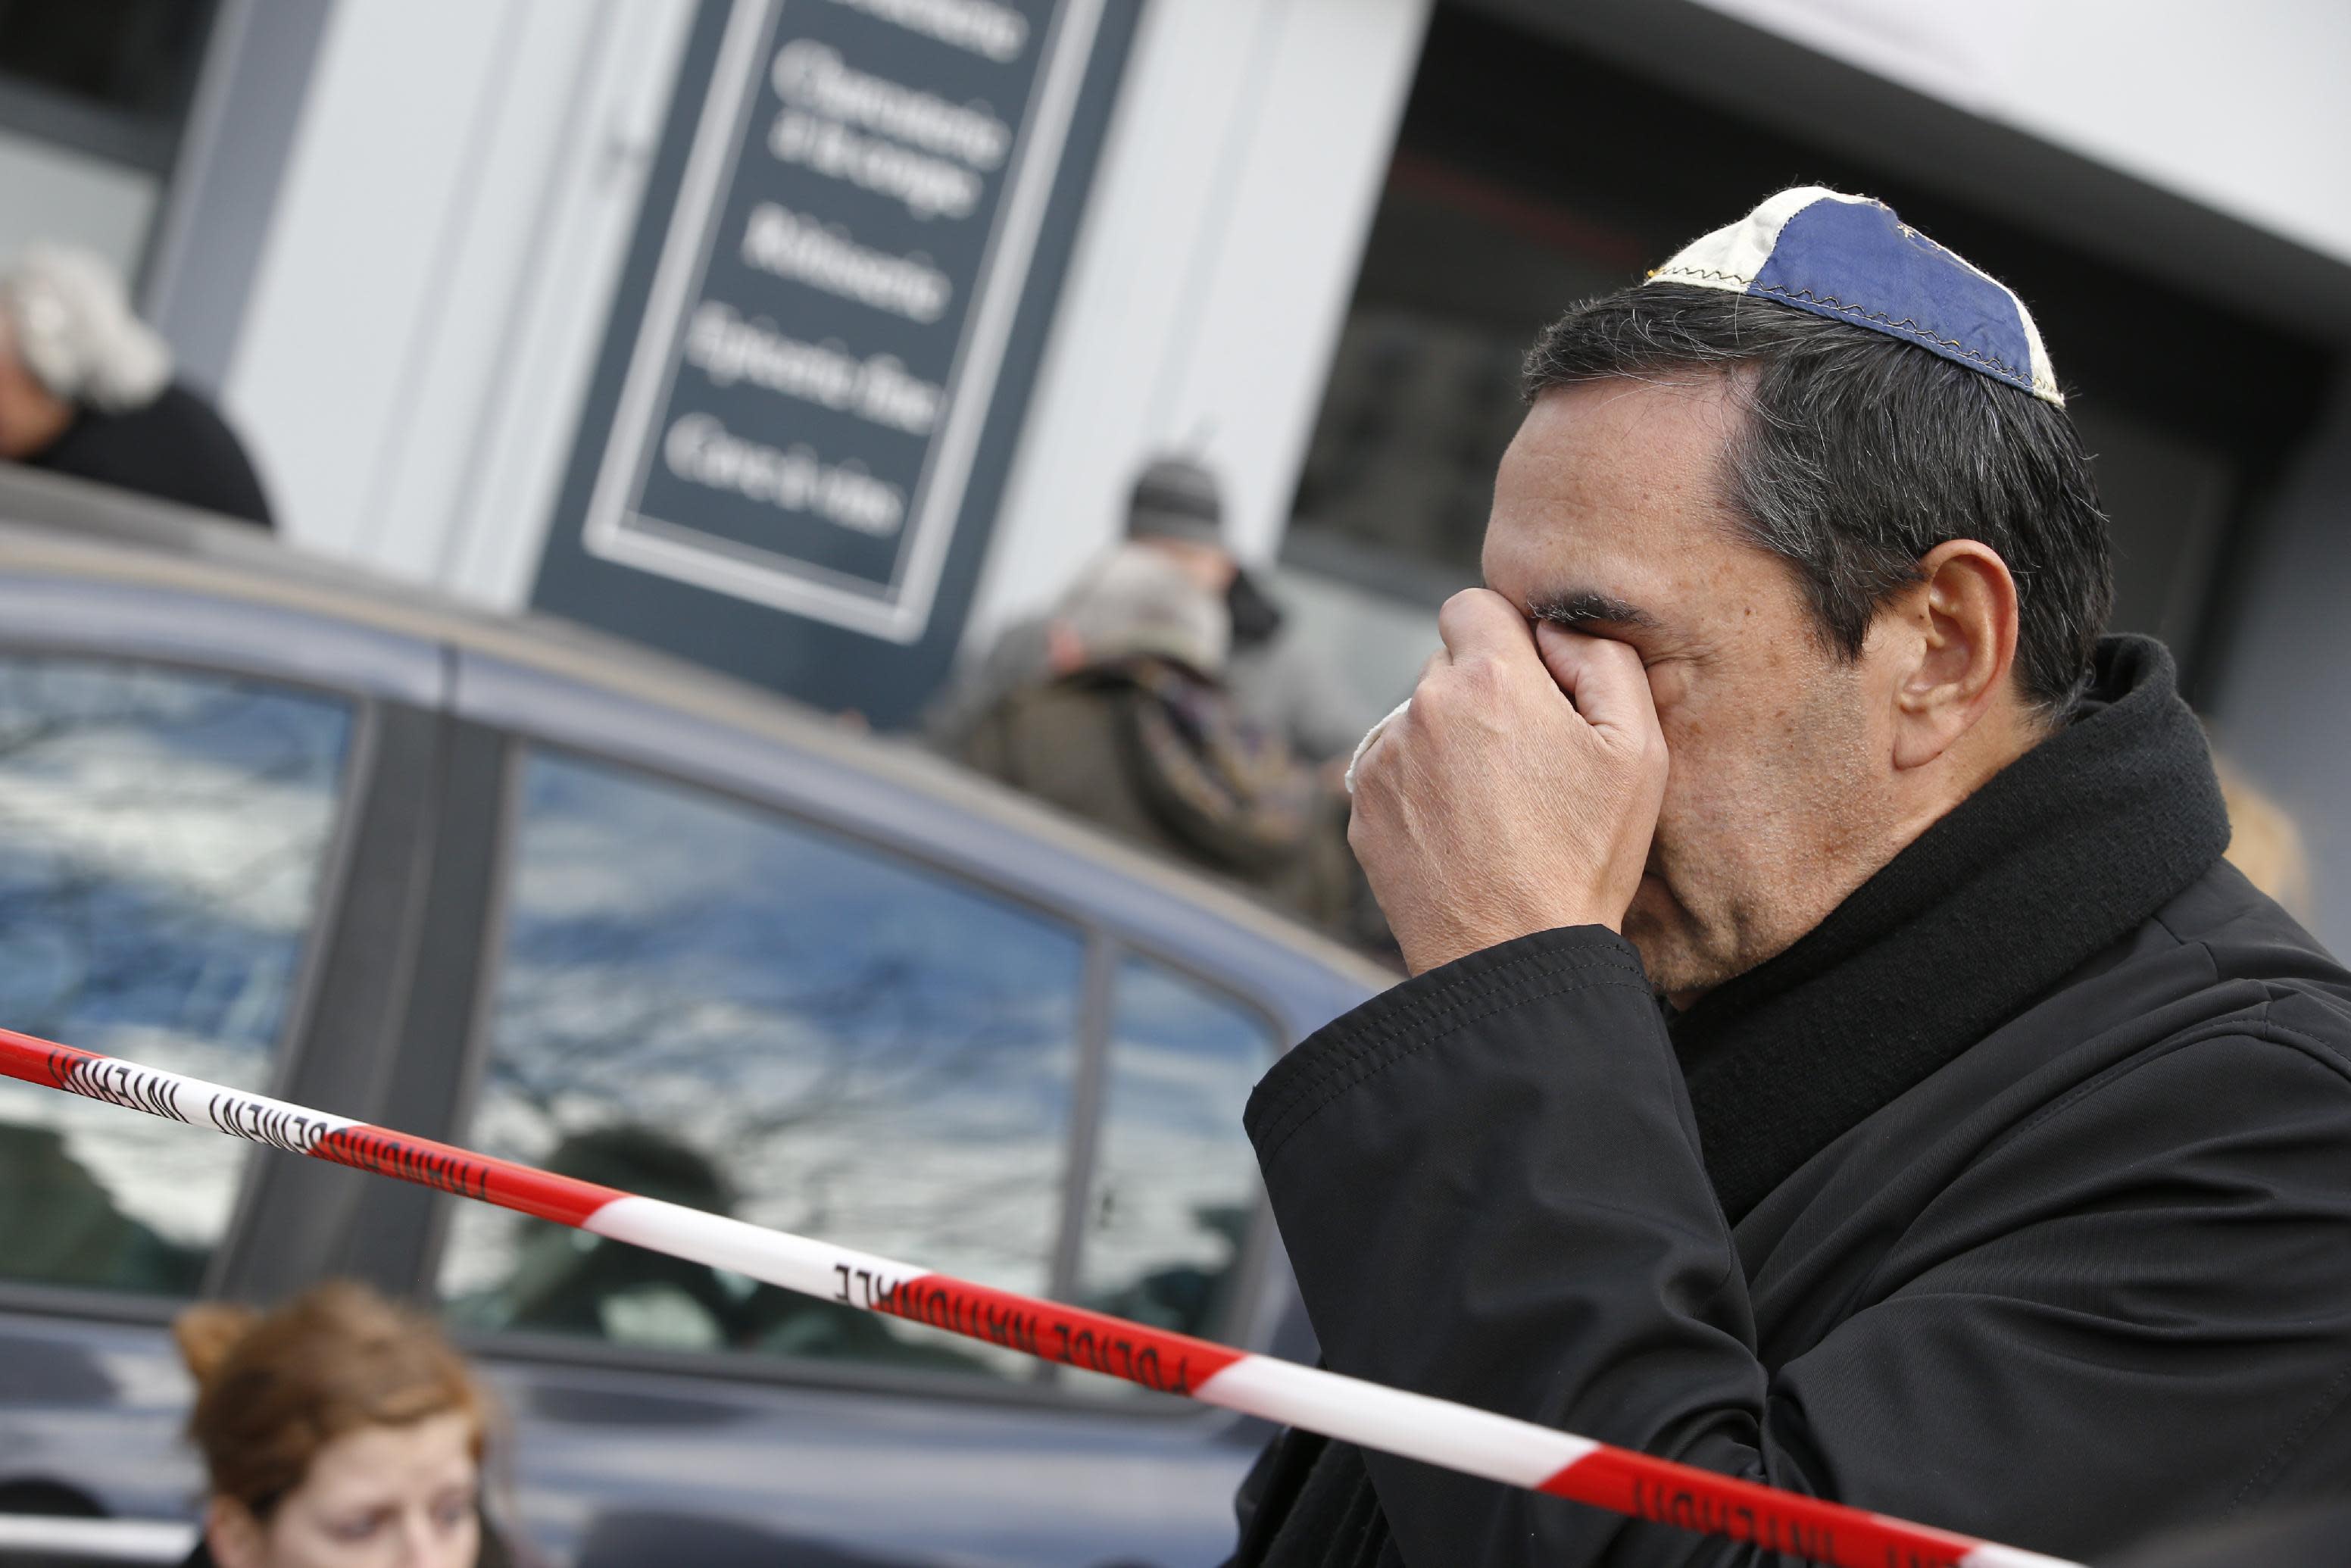 French probe into kosher supermarket attacker moving forward